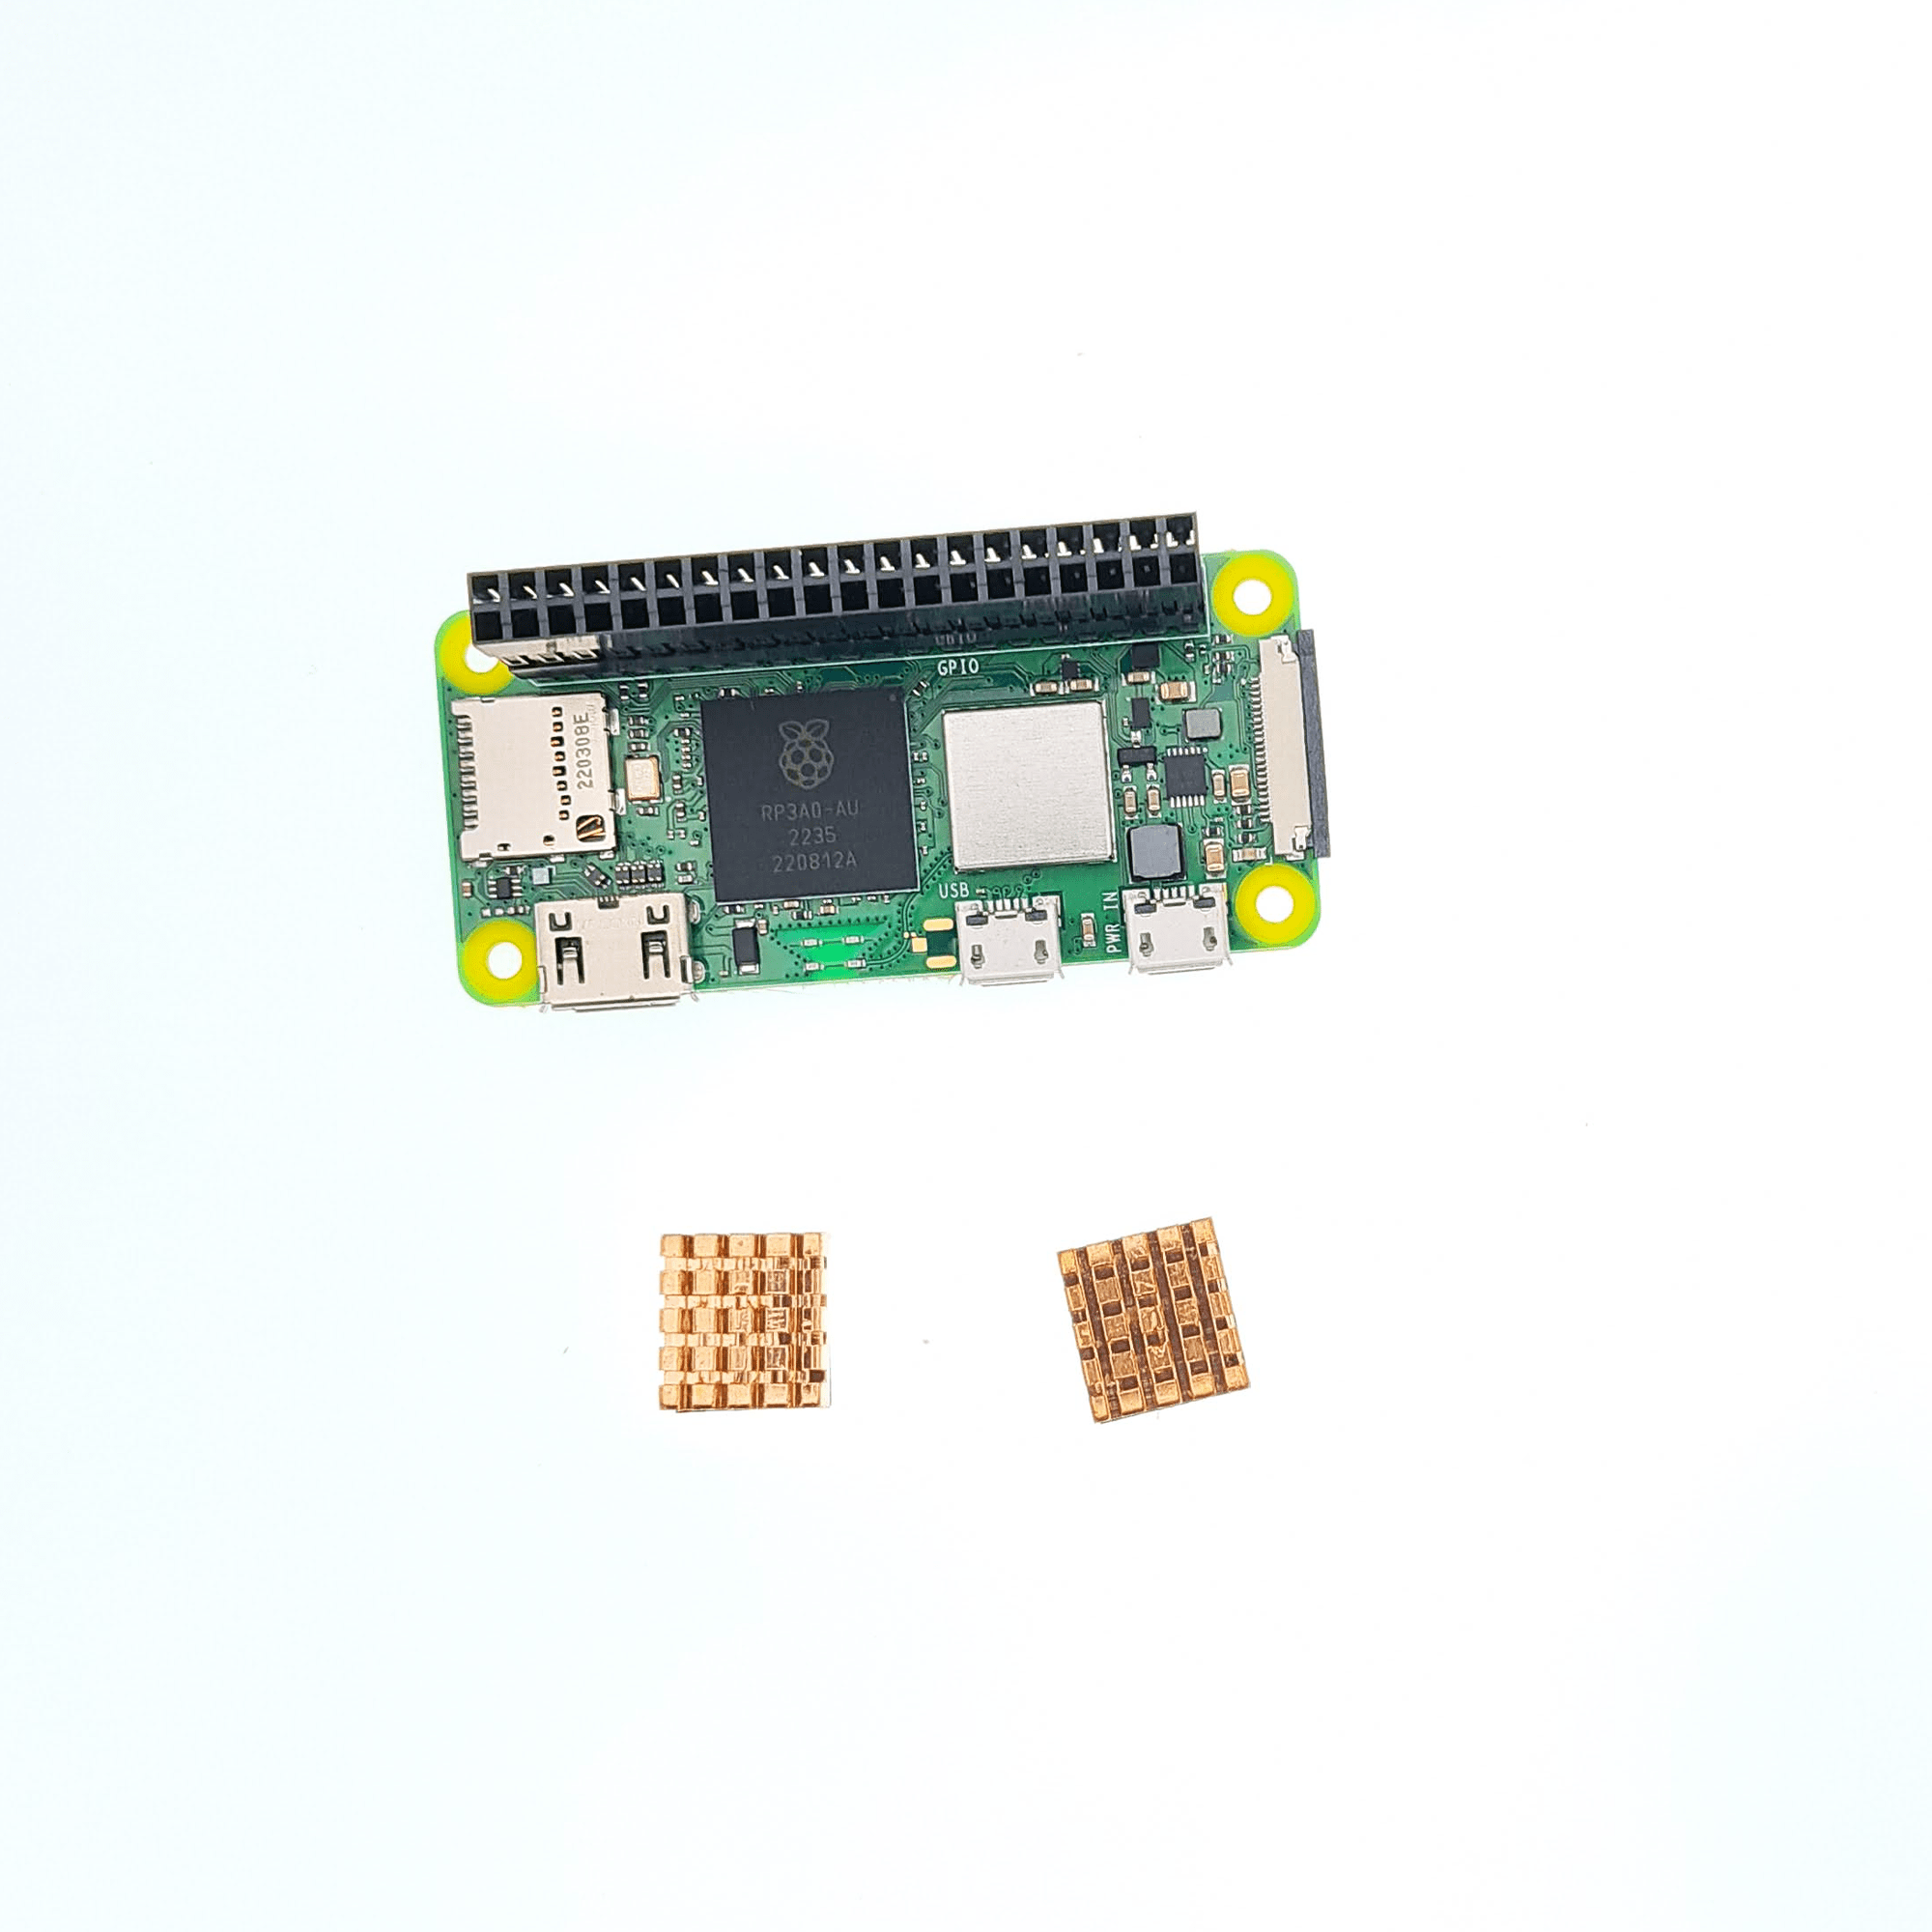 Shop - Raspberry Pi Zero 2 W (w/ headers) - Lab4450.com